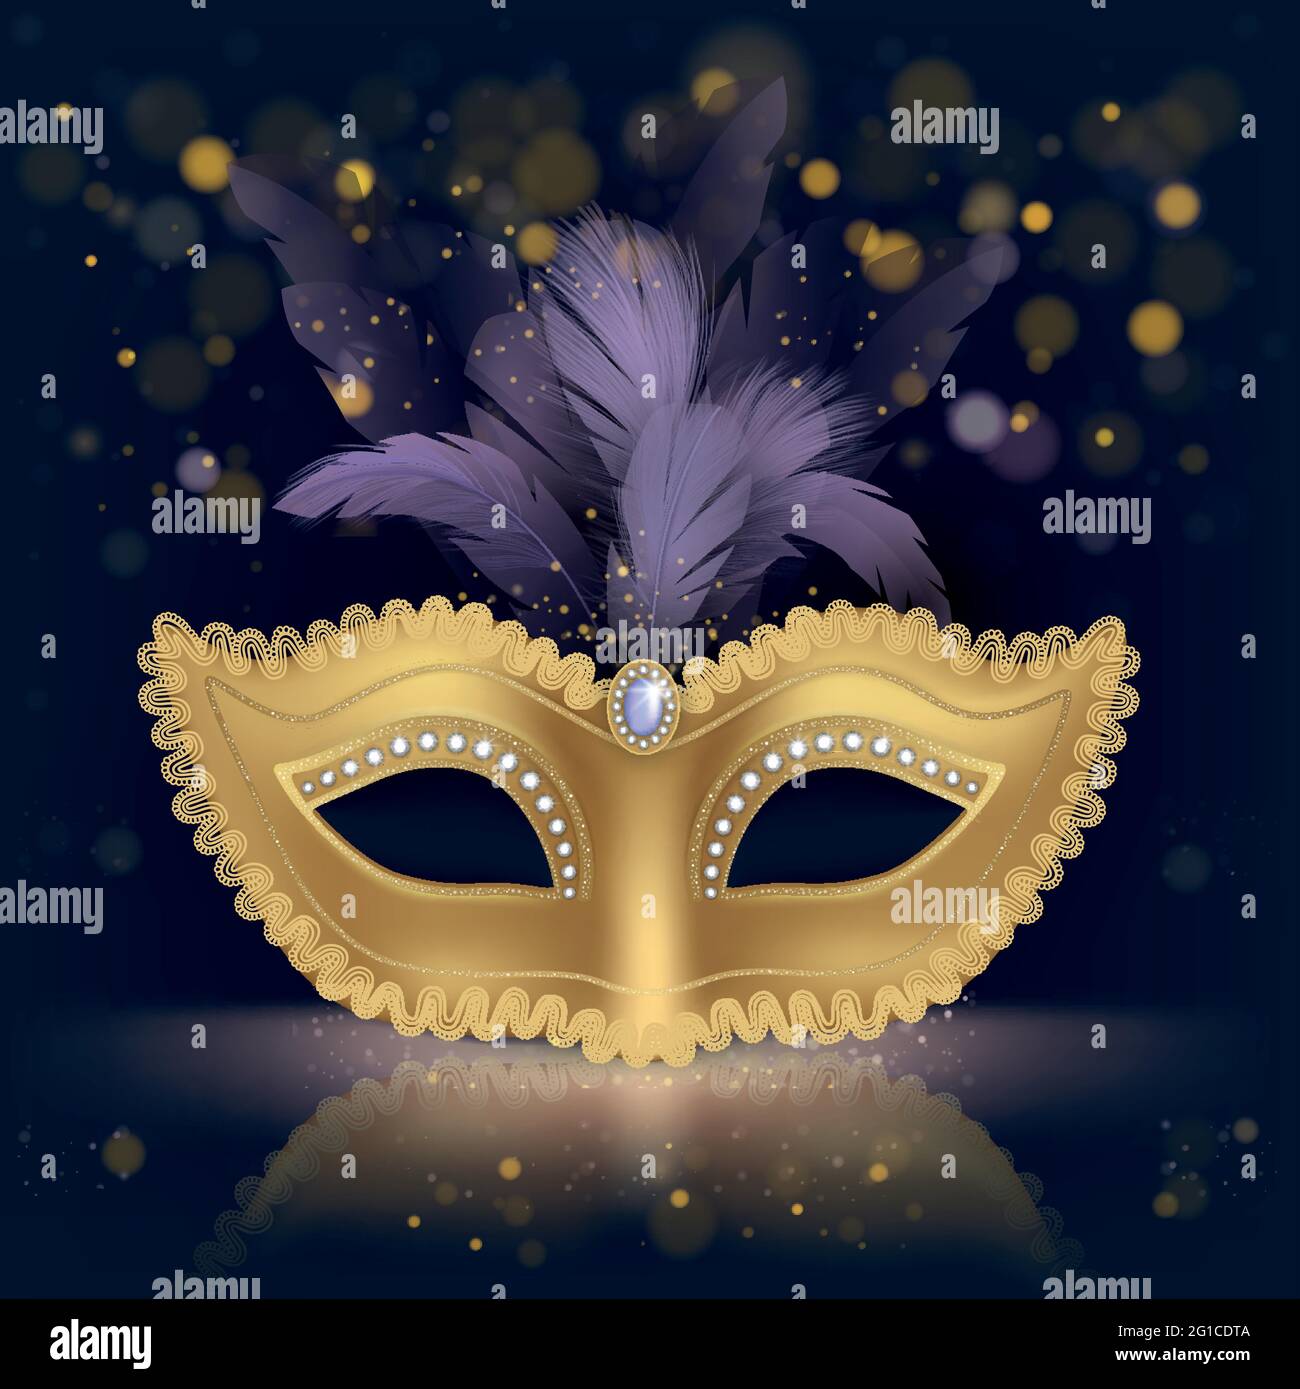 Maschera di seta dorata a mezza faccia colombina decorata con pietre preziose e piume viola vettore realistico su sfondo scuro con scintille d'oro. Carnevale veneziano, festa in costume vestendo illustrazione Illustrazione Vettoriale